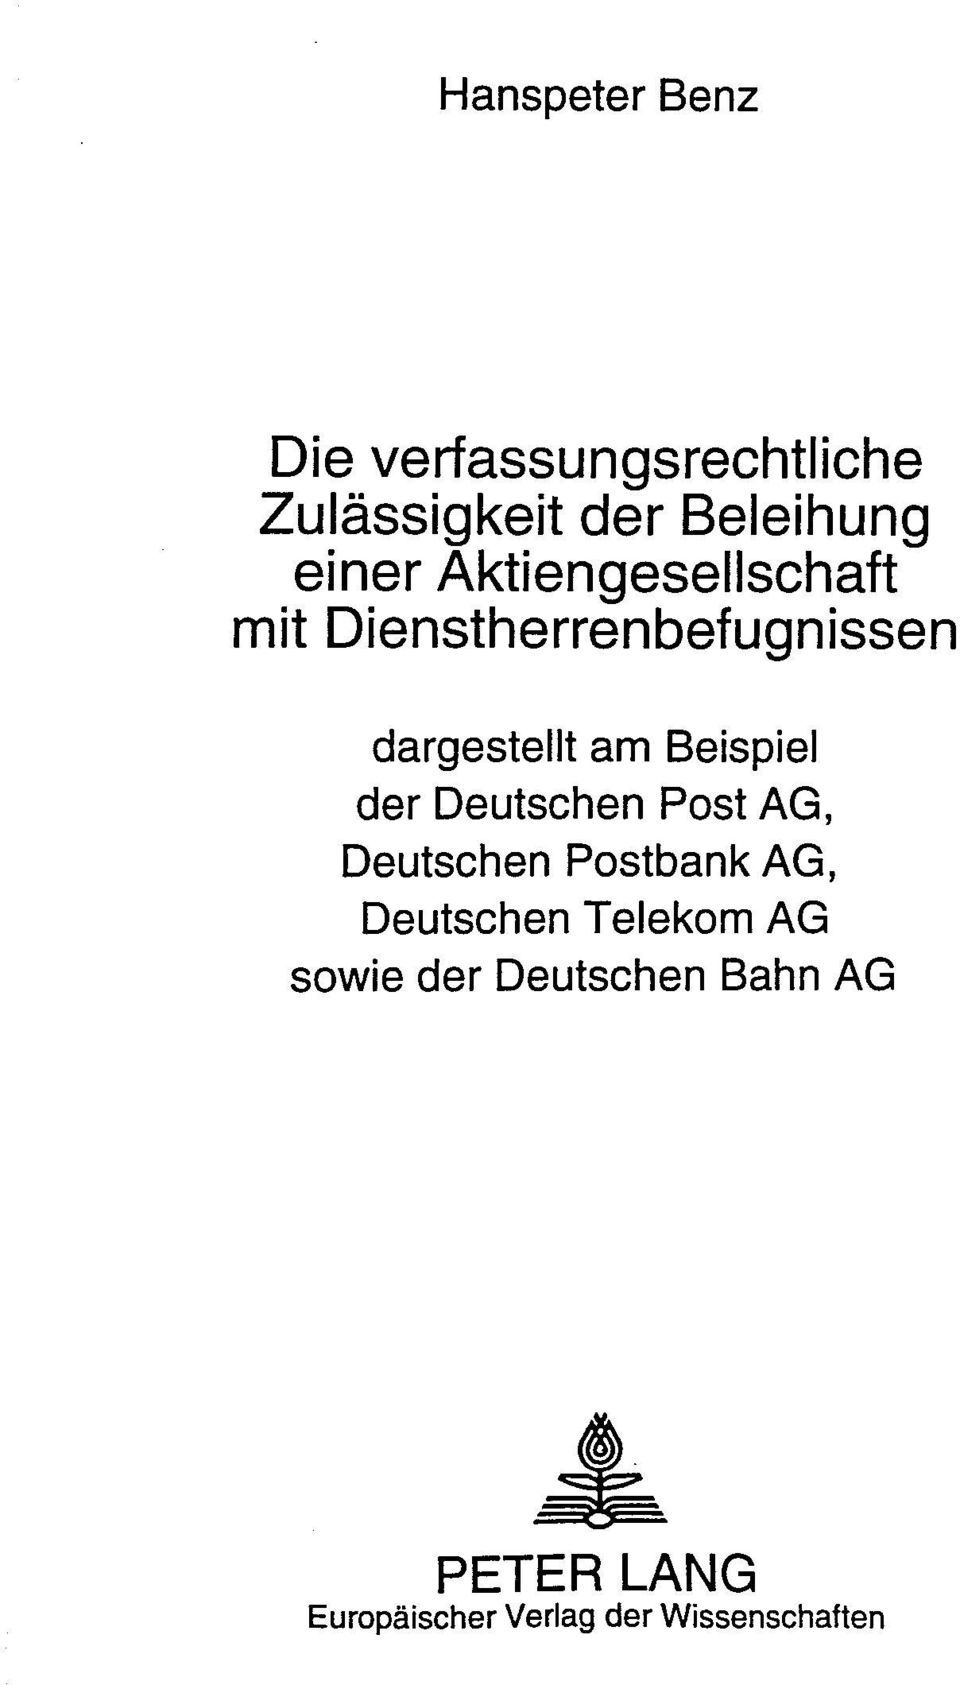 Beispiel der Deutschen Post AG, Deutschen Postbank AG, Deutschen Telekom